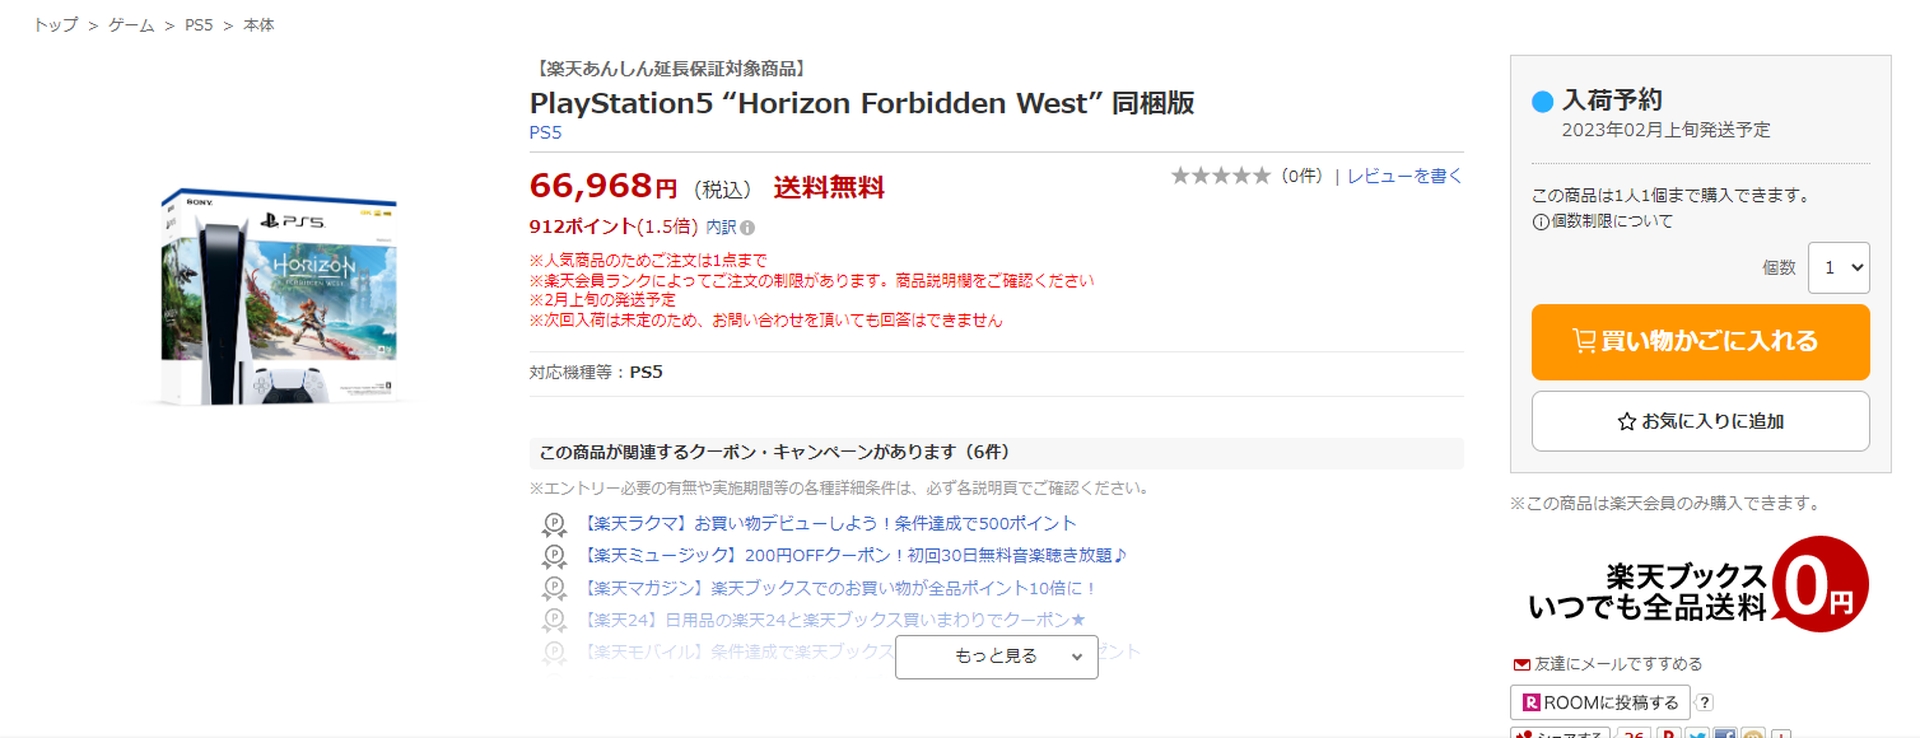 PS5「Horizon Forbidden West」同梱版の2月上旬発送分が予約受付中